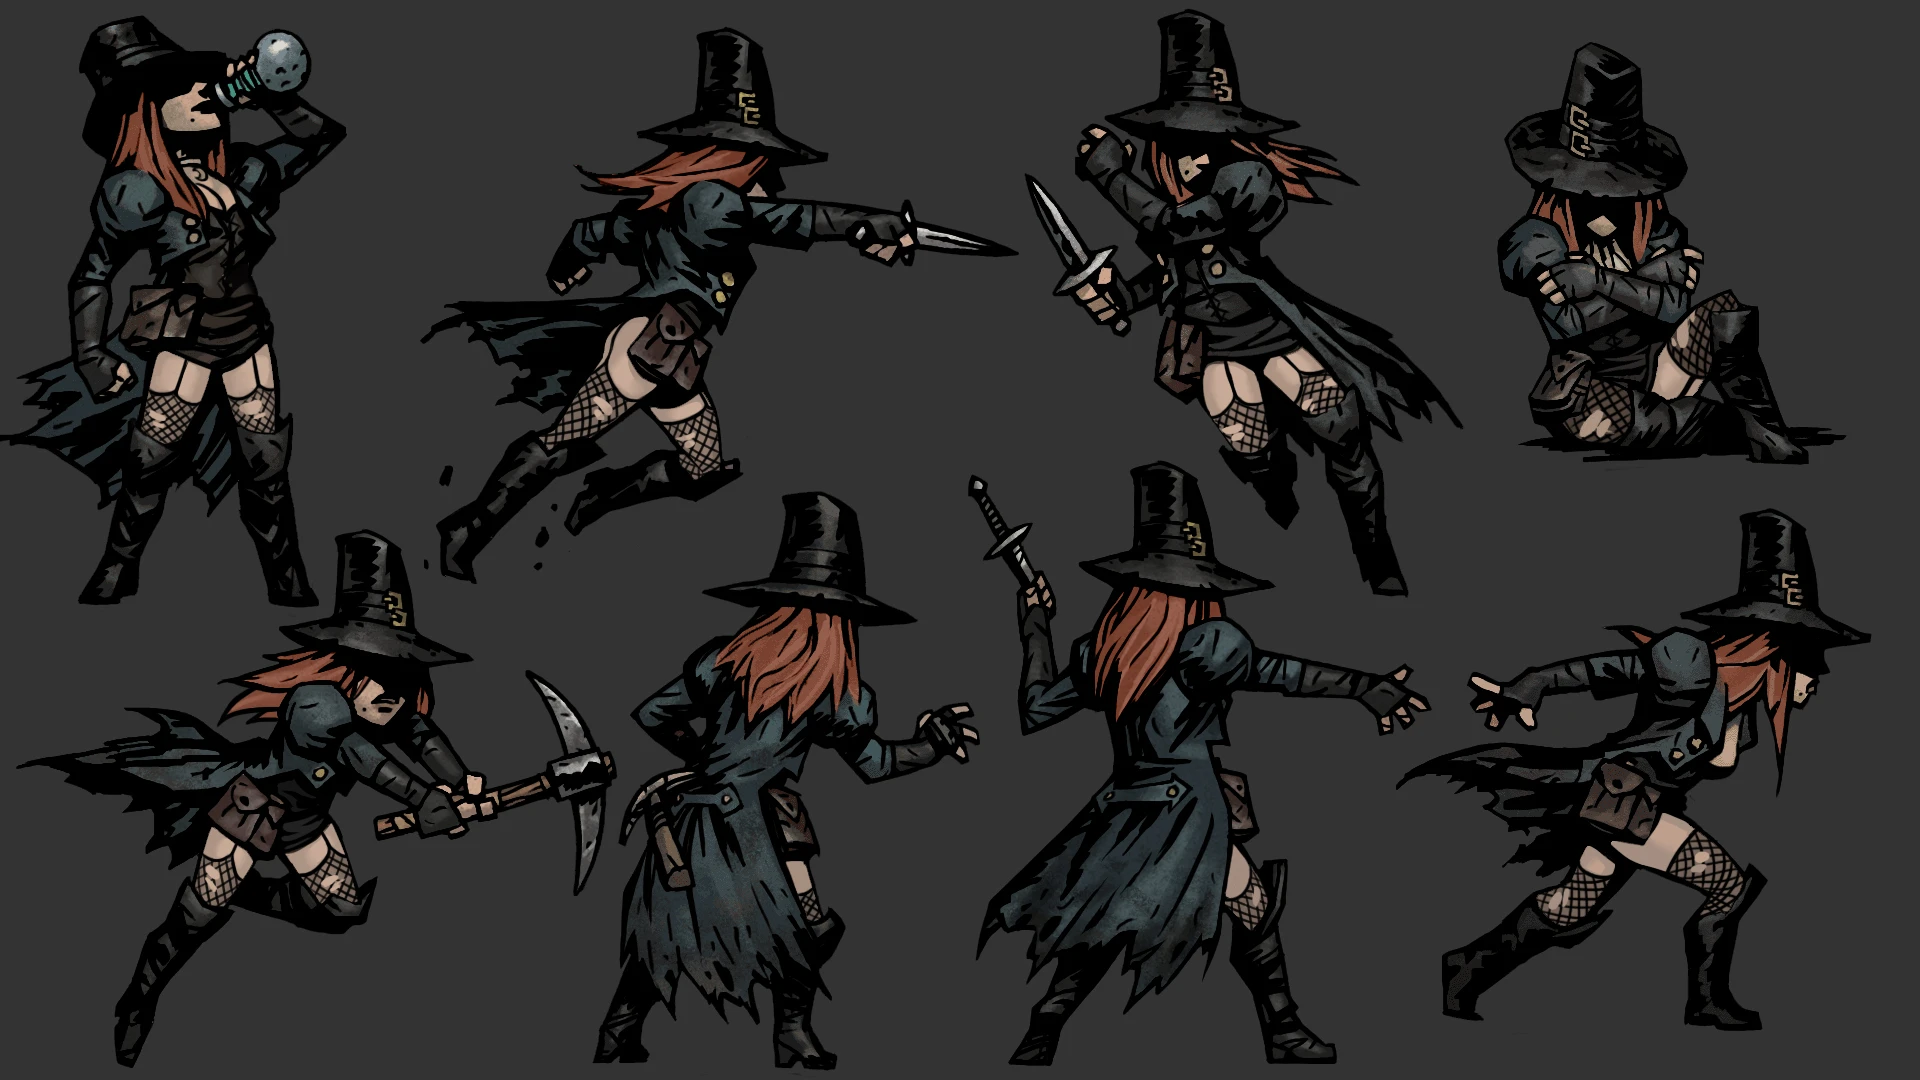 grave robber dancing team comp darkest dungeon